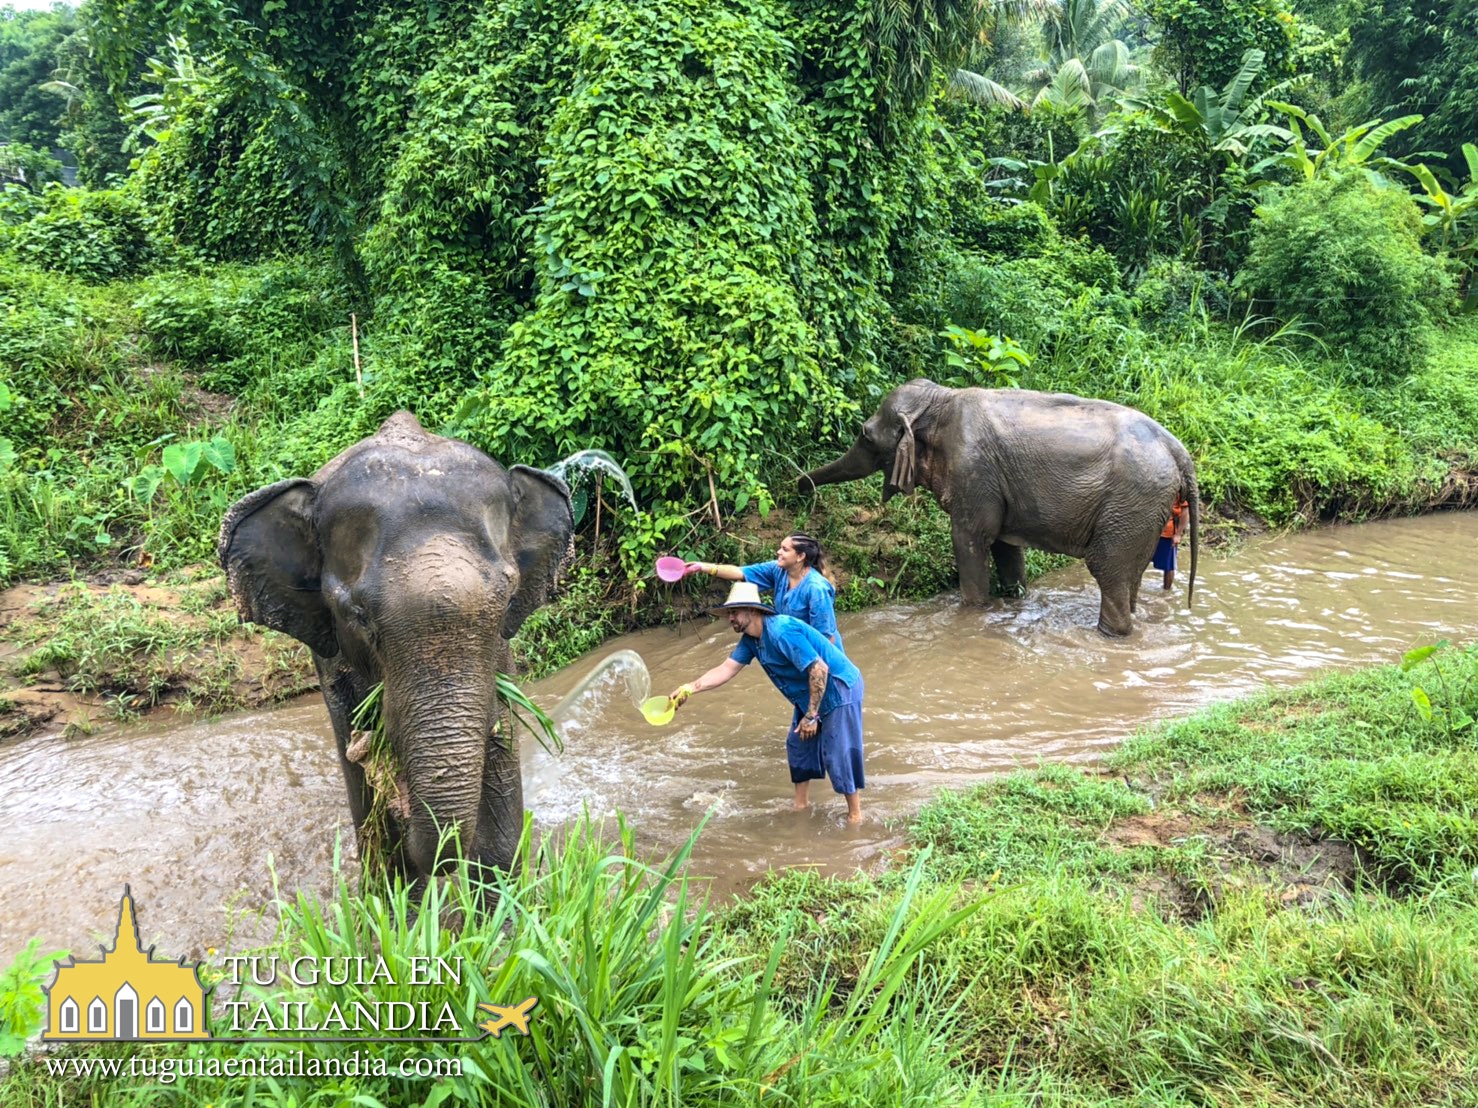 Interactuando con elefantes en Tailandia.